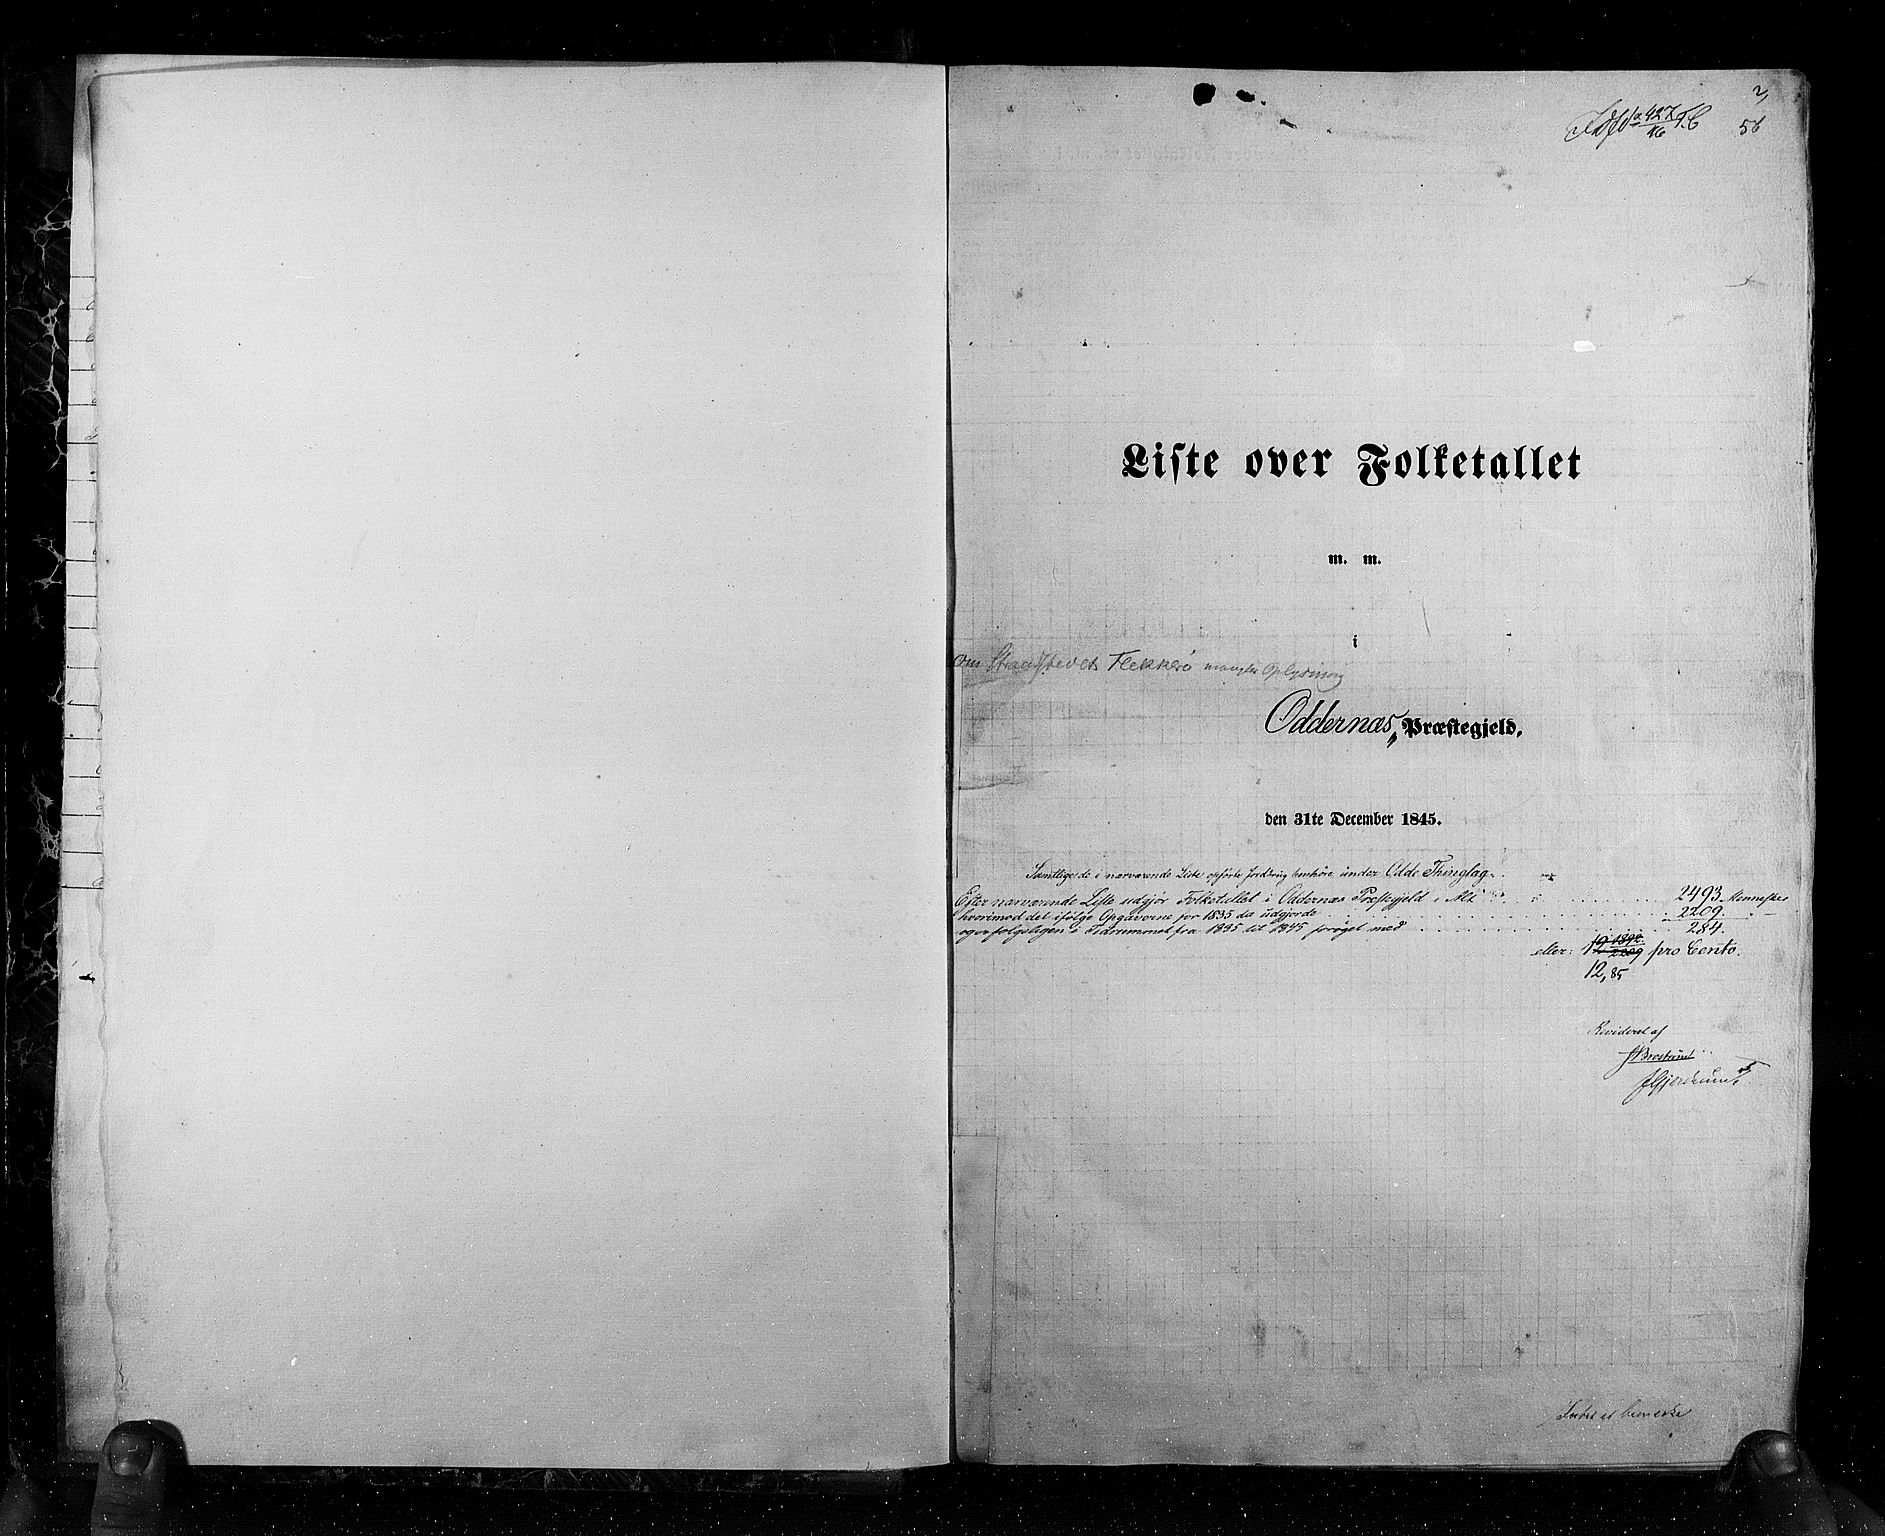 RA, Folketellingen 1845, bind 6: Lister og Mandal amt og Stavanger amt, 1845, s. 2